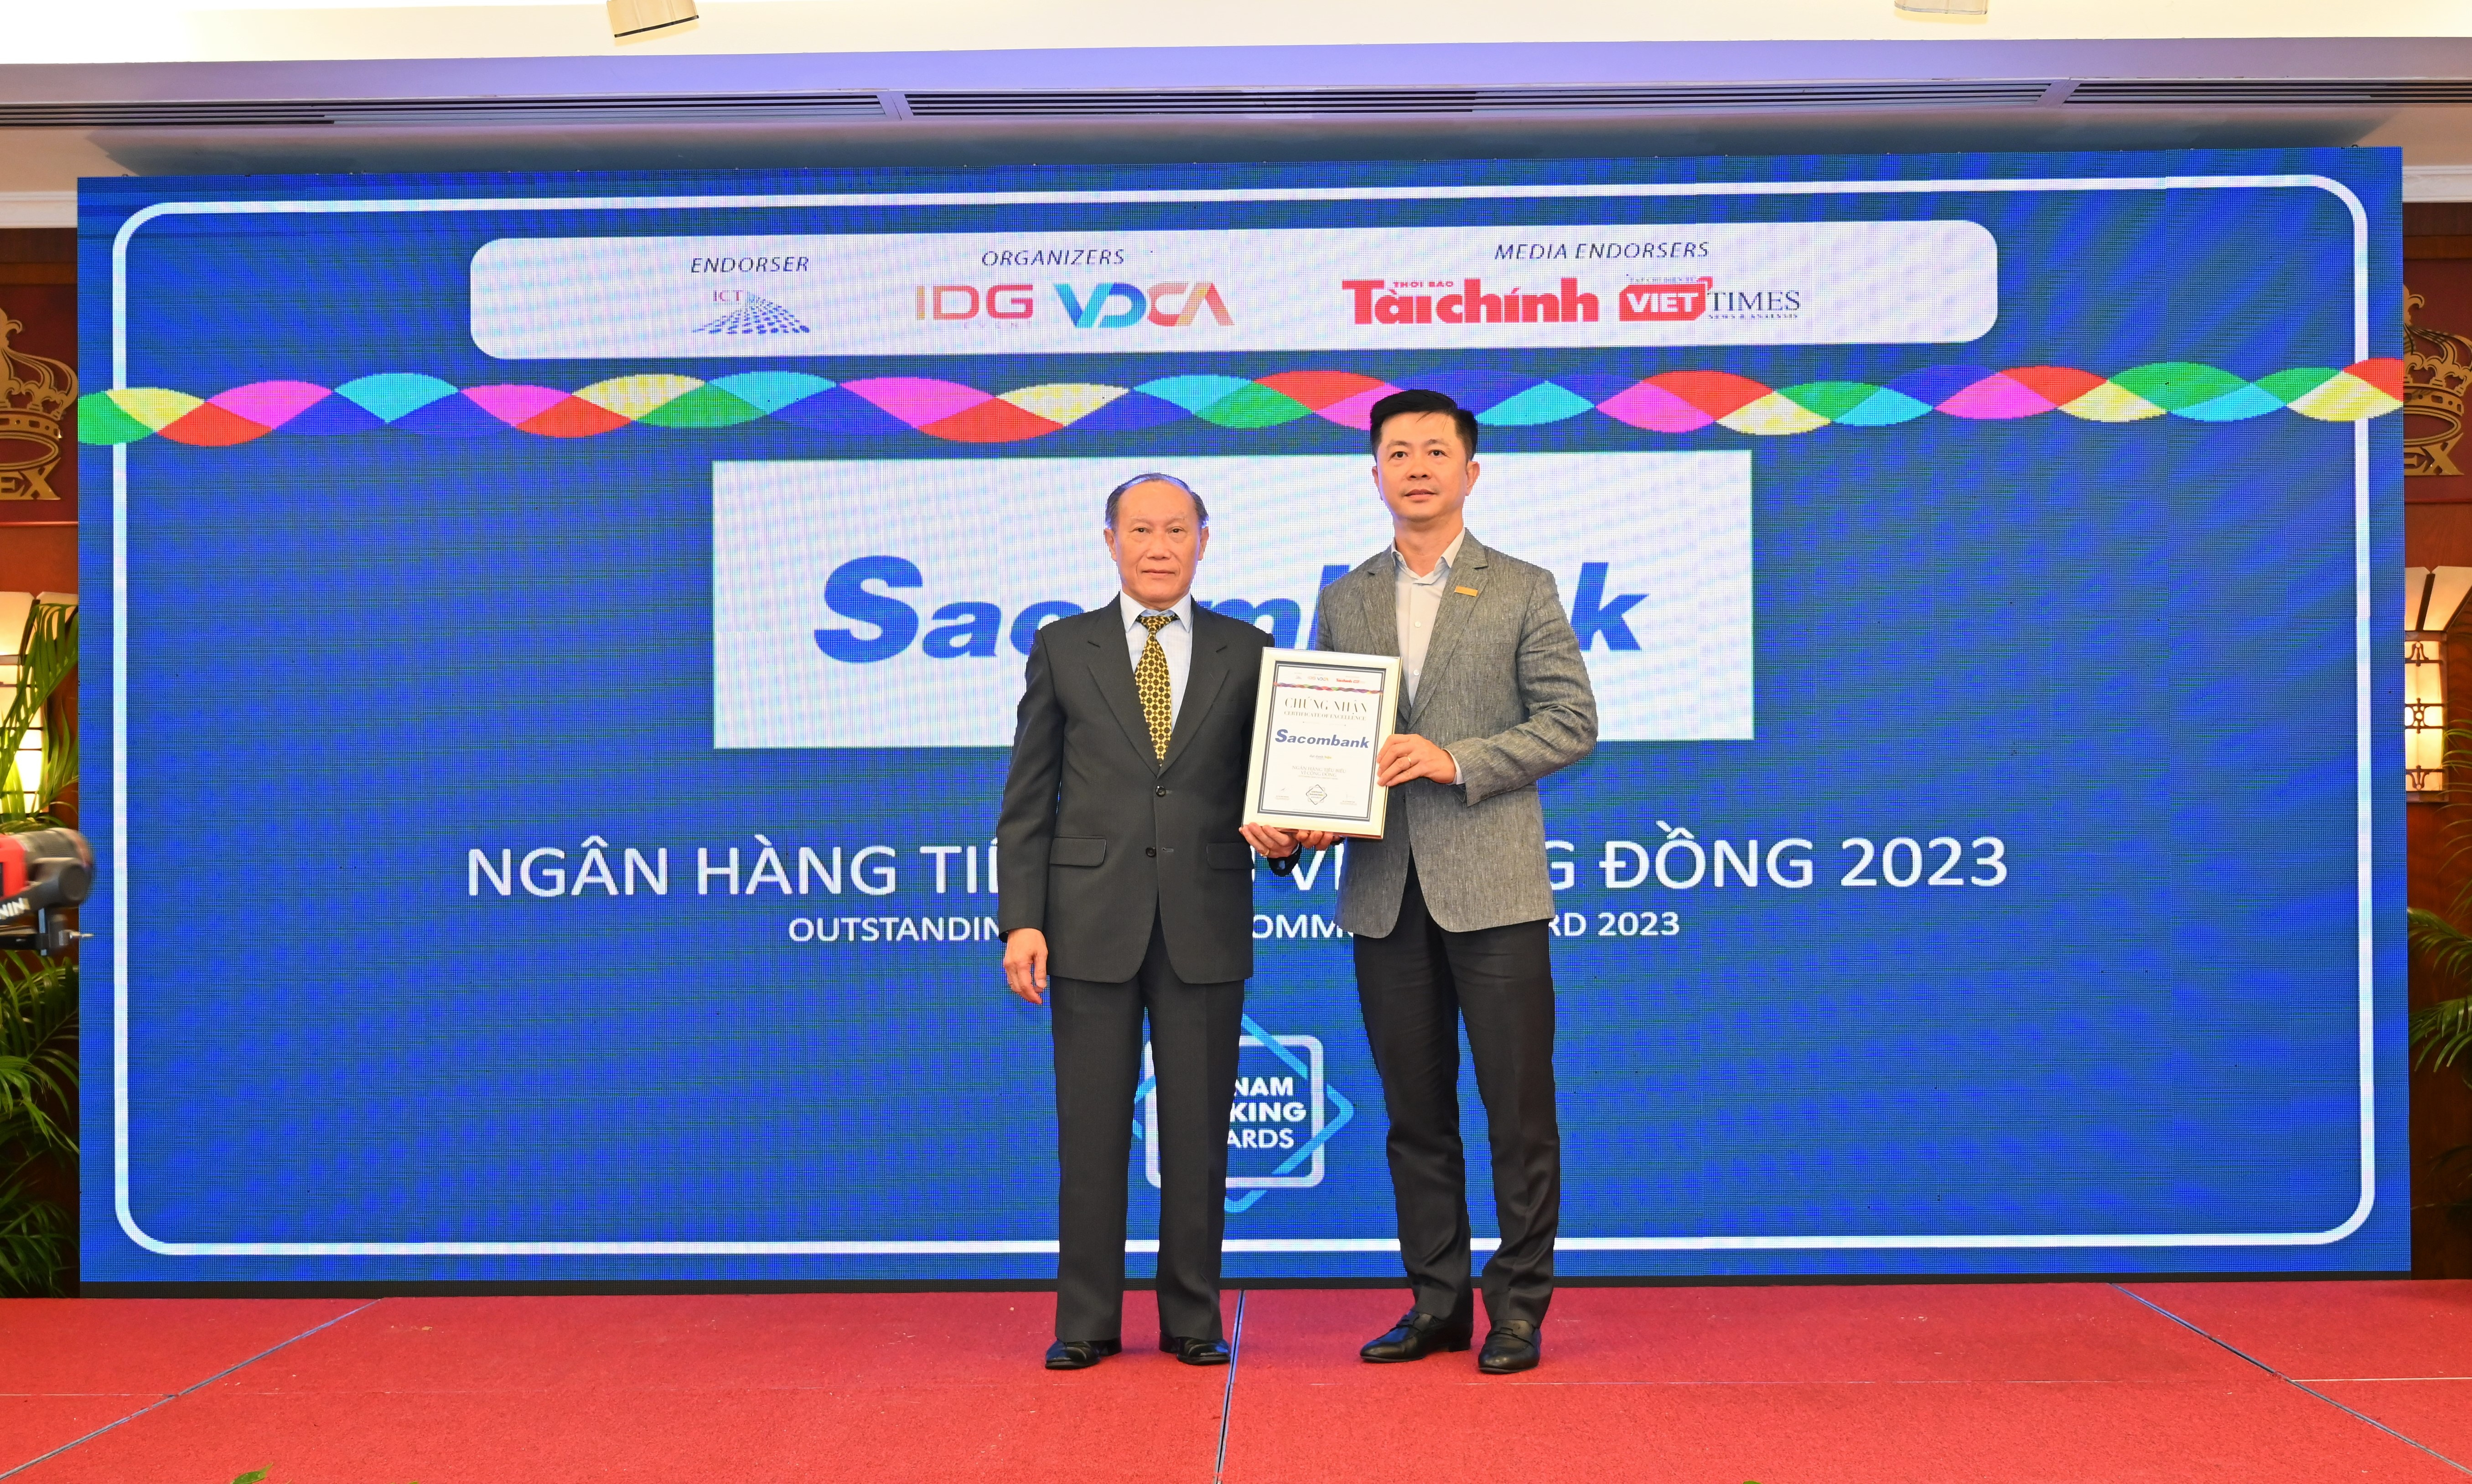 Đại diện Sacombank, ông Nguyễn Minh Tâm – Phó Tổng giám đốc (bên phải) nhận giải thưởng “Ngân hàng bán lẻ tiêu biểu” và “Ngân hàng tiêu biểu vì cộng đồng”.